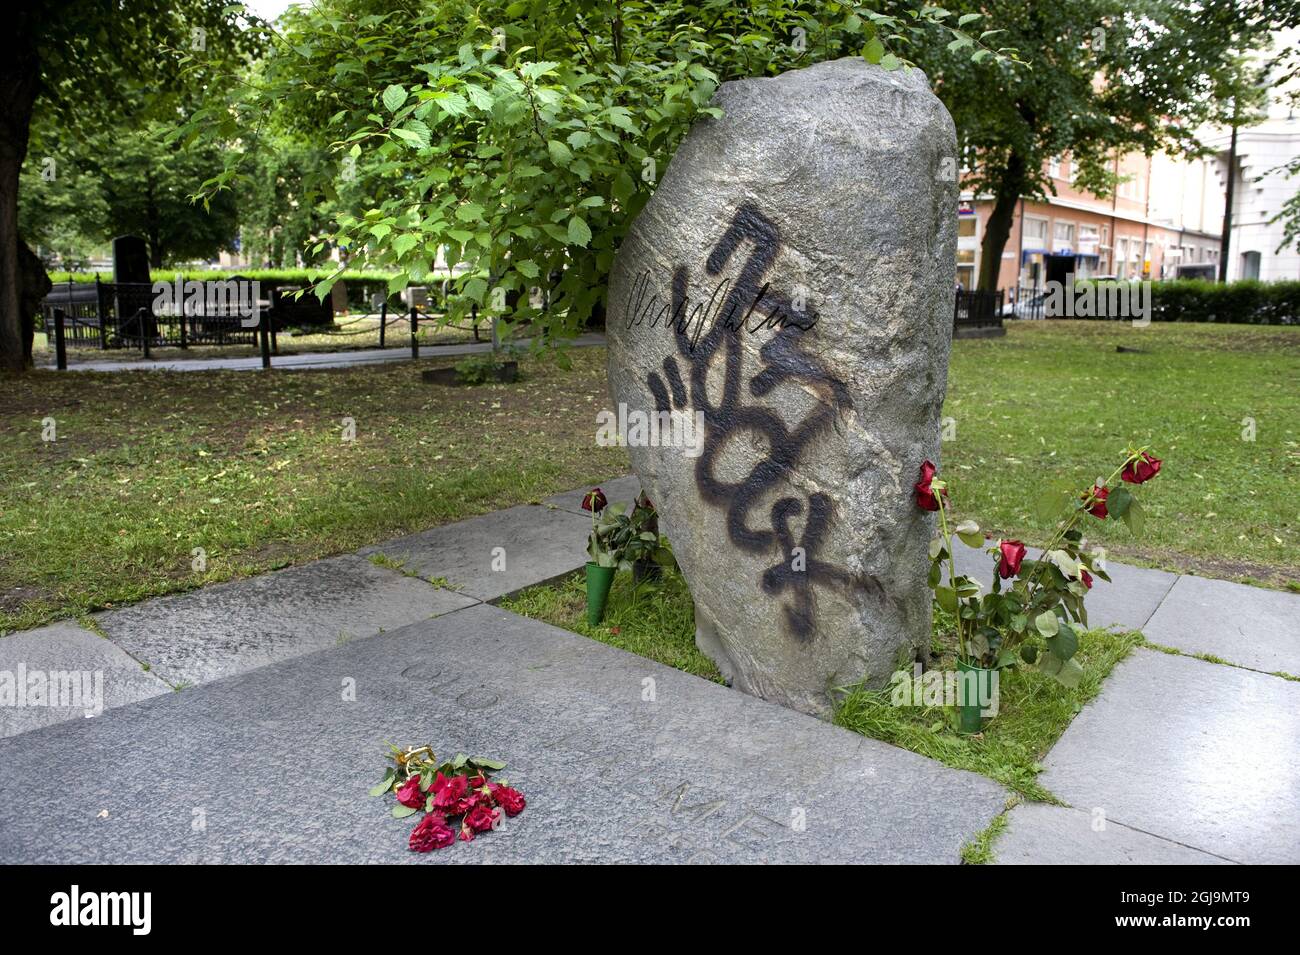 STOCKHOLM 20110615 das Grab des verstorbenen schwedischen Premierministers Olof Palme wird in einem Grabhof im Zentrum Stockholms, Schweden, am 16. Juni 2011, mit Graffiti verwüstet. Das Grab wurde in der Nacht vor Donnerstag verwüstet. Premierminister Palme wurde im Zentrum von Stockholm1986 getötet. Foto: Gunnar Lundmark / SVD / SCANPIX / Kod: 30102 ** OUT SWEDEN OUT** Stockfoto